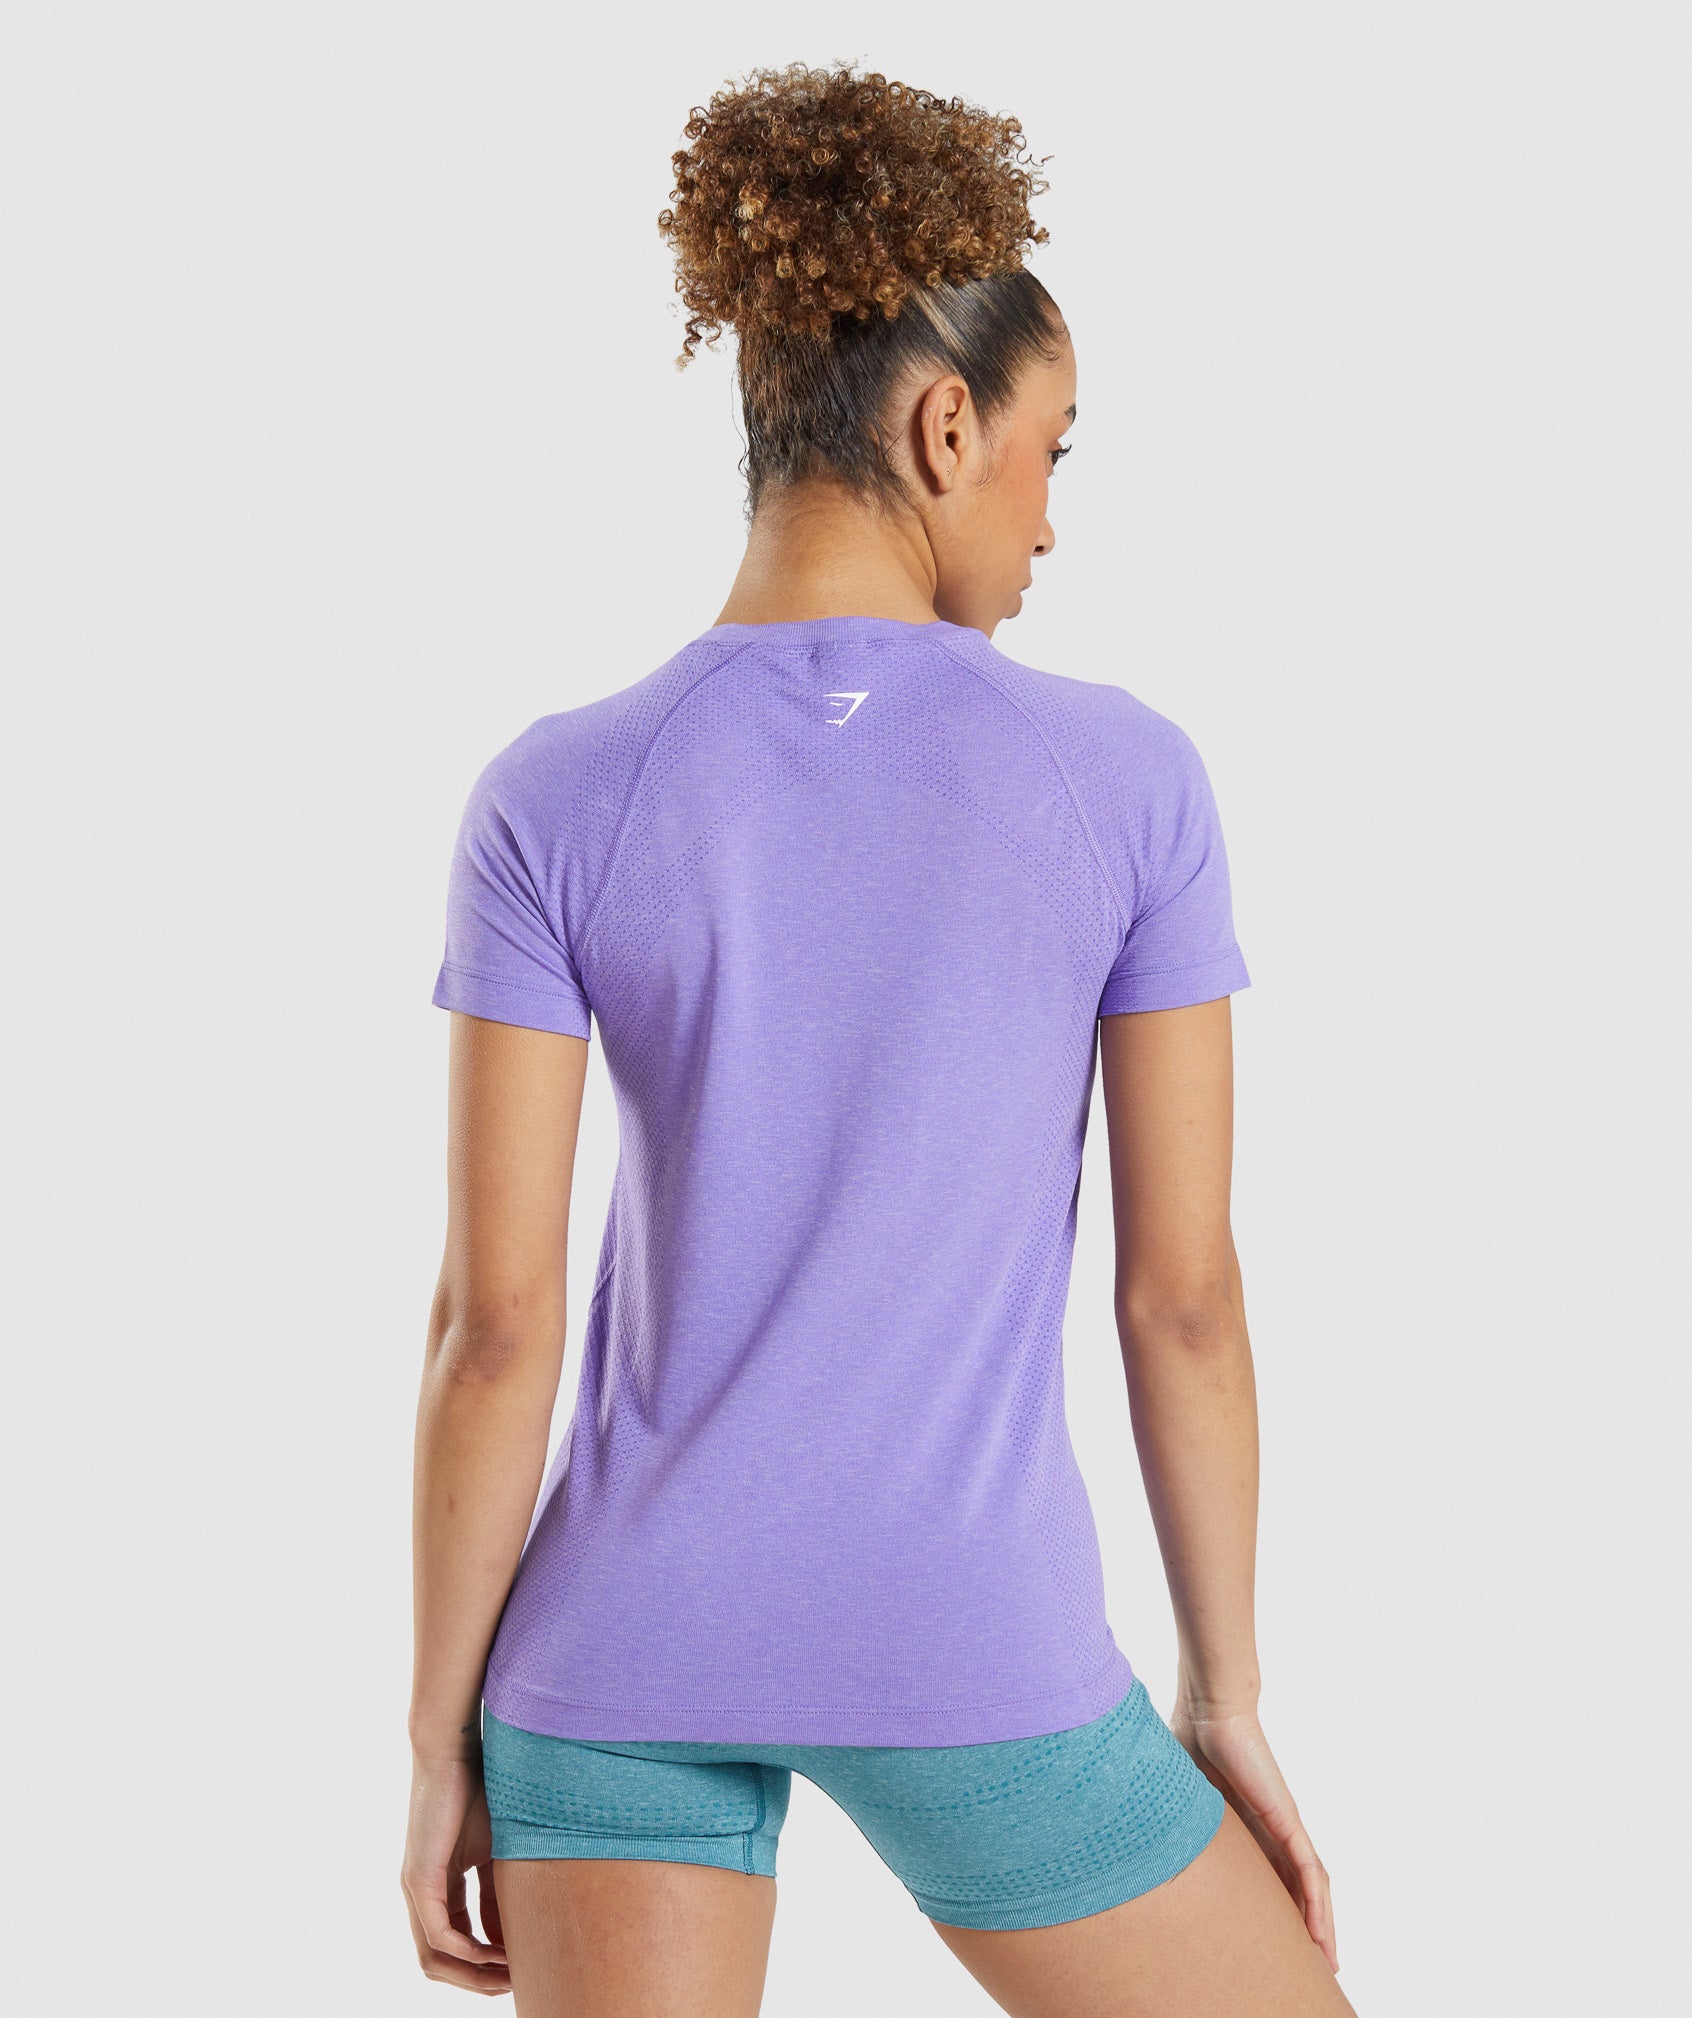 Vital Seamless 2.0 Light T-Shirt in Bright Purple Marl